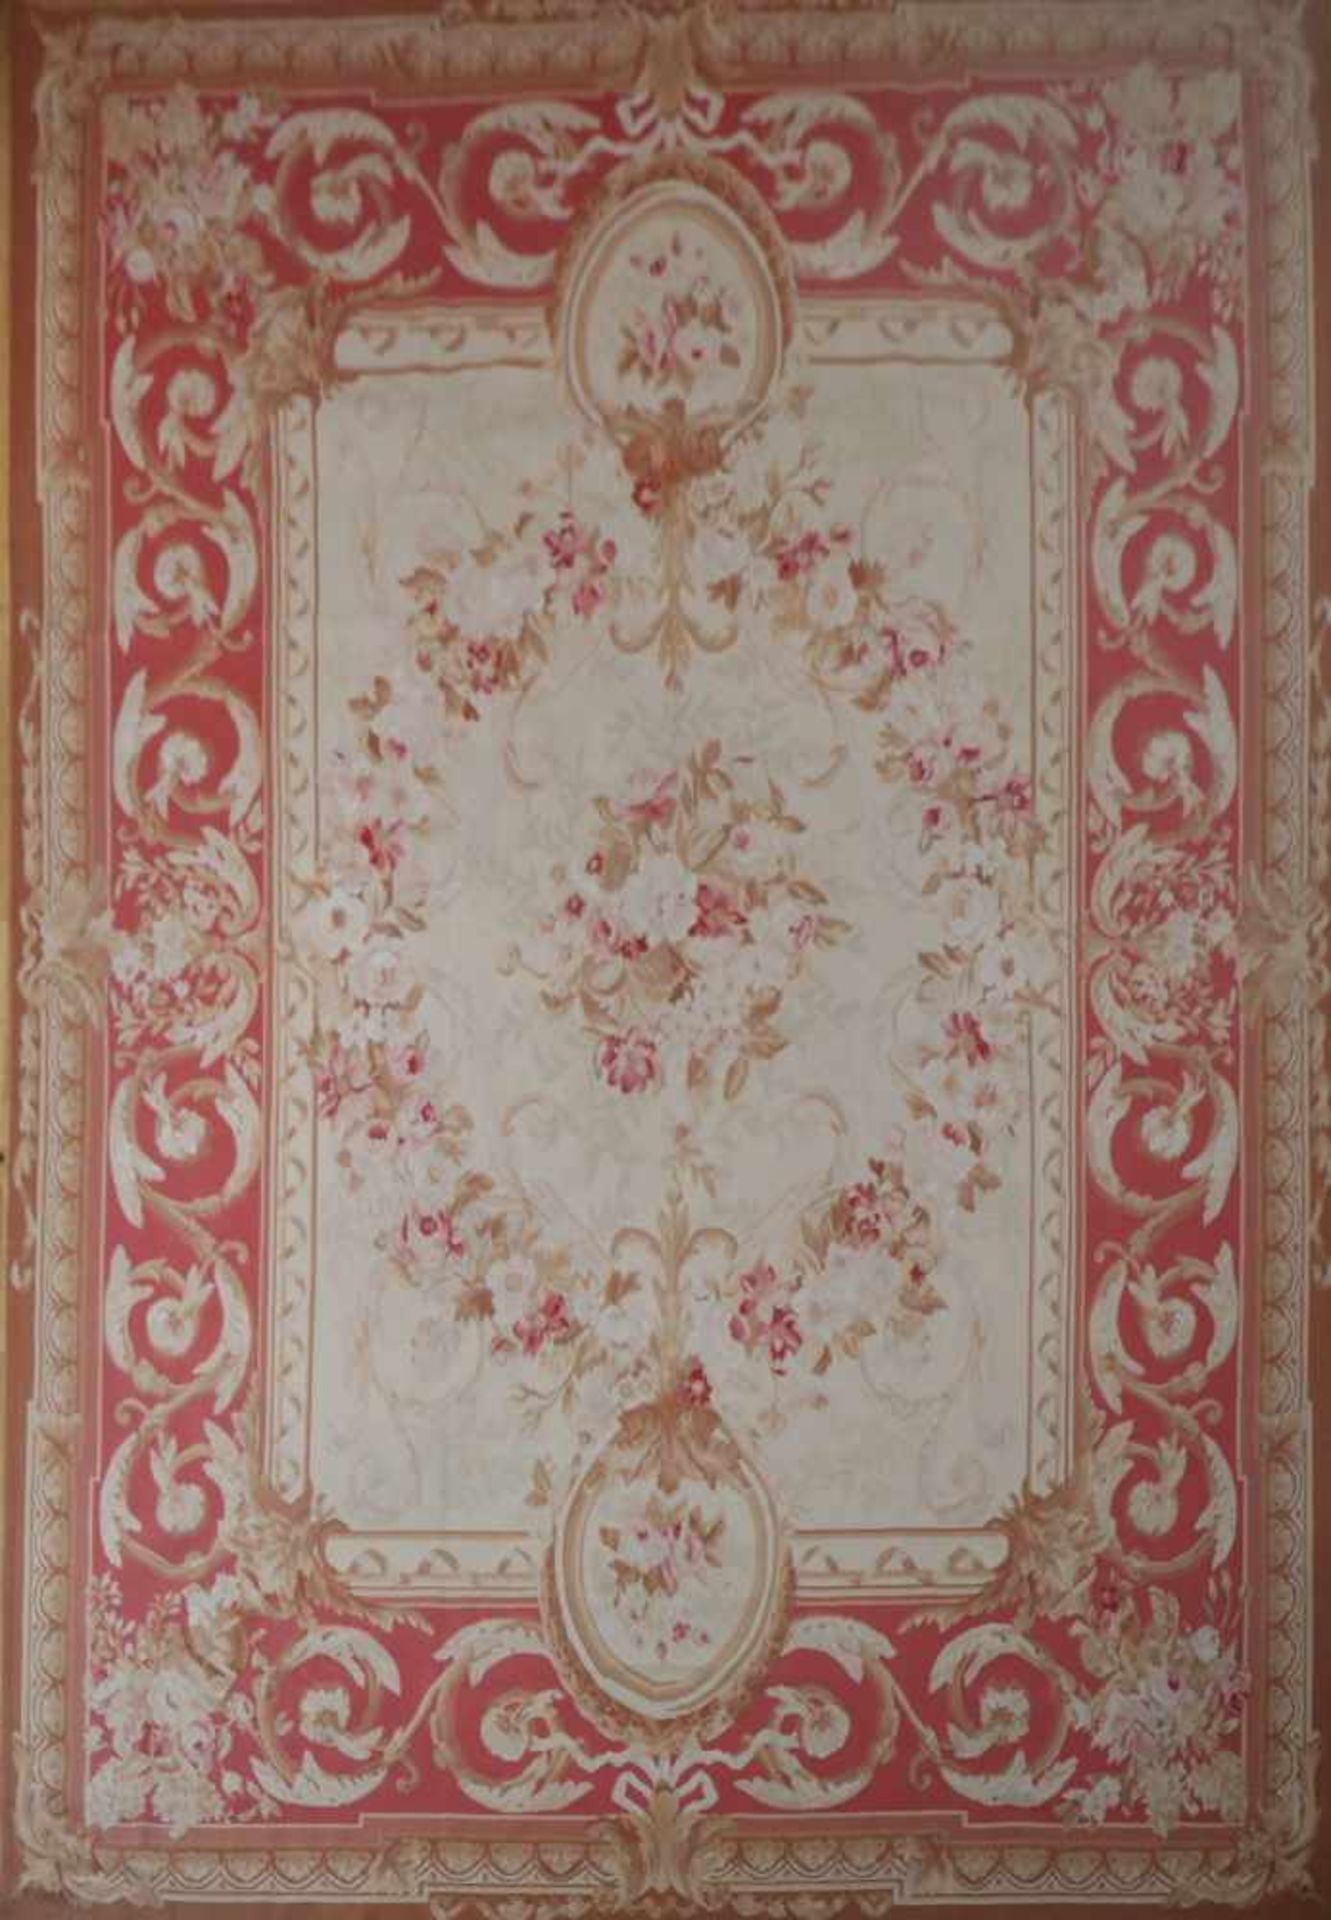 Aubusson Teppich im französischen Stilhellgrundiges Zentralfeld mit üppigem Floraldekor (Rosen und